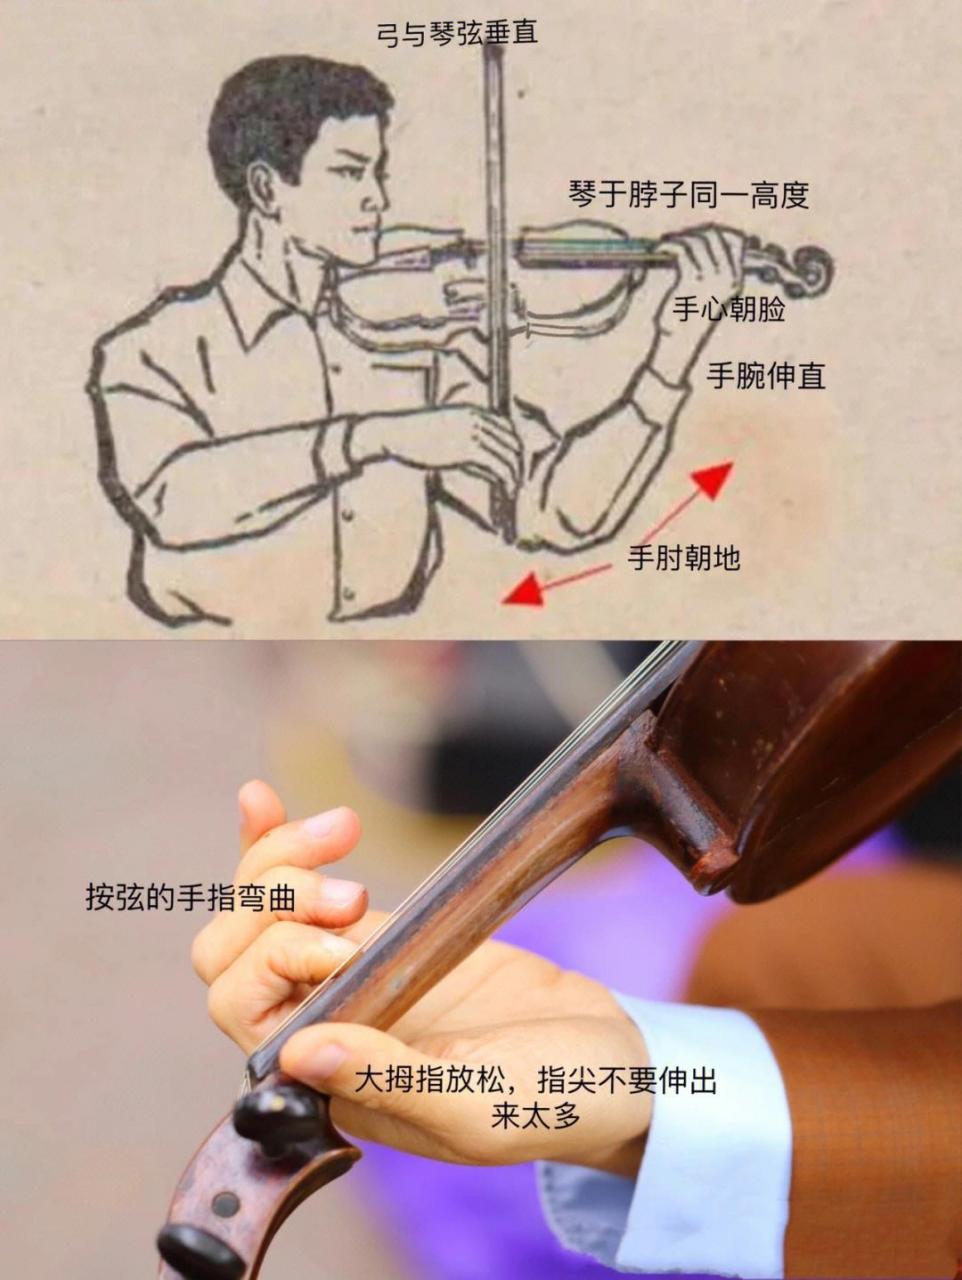 小提琴夹琴的正确方式图片